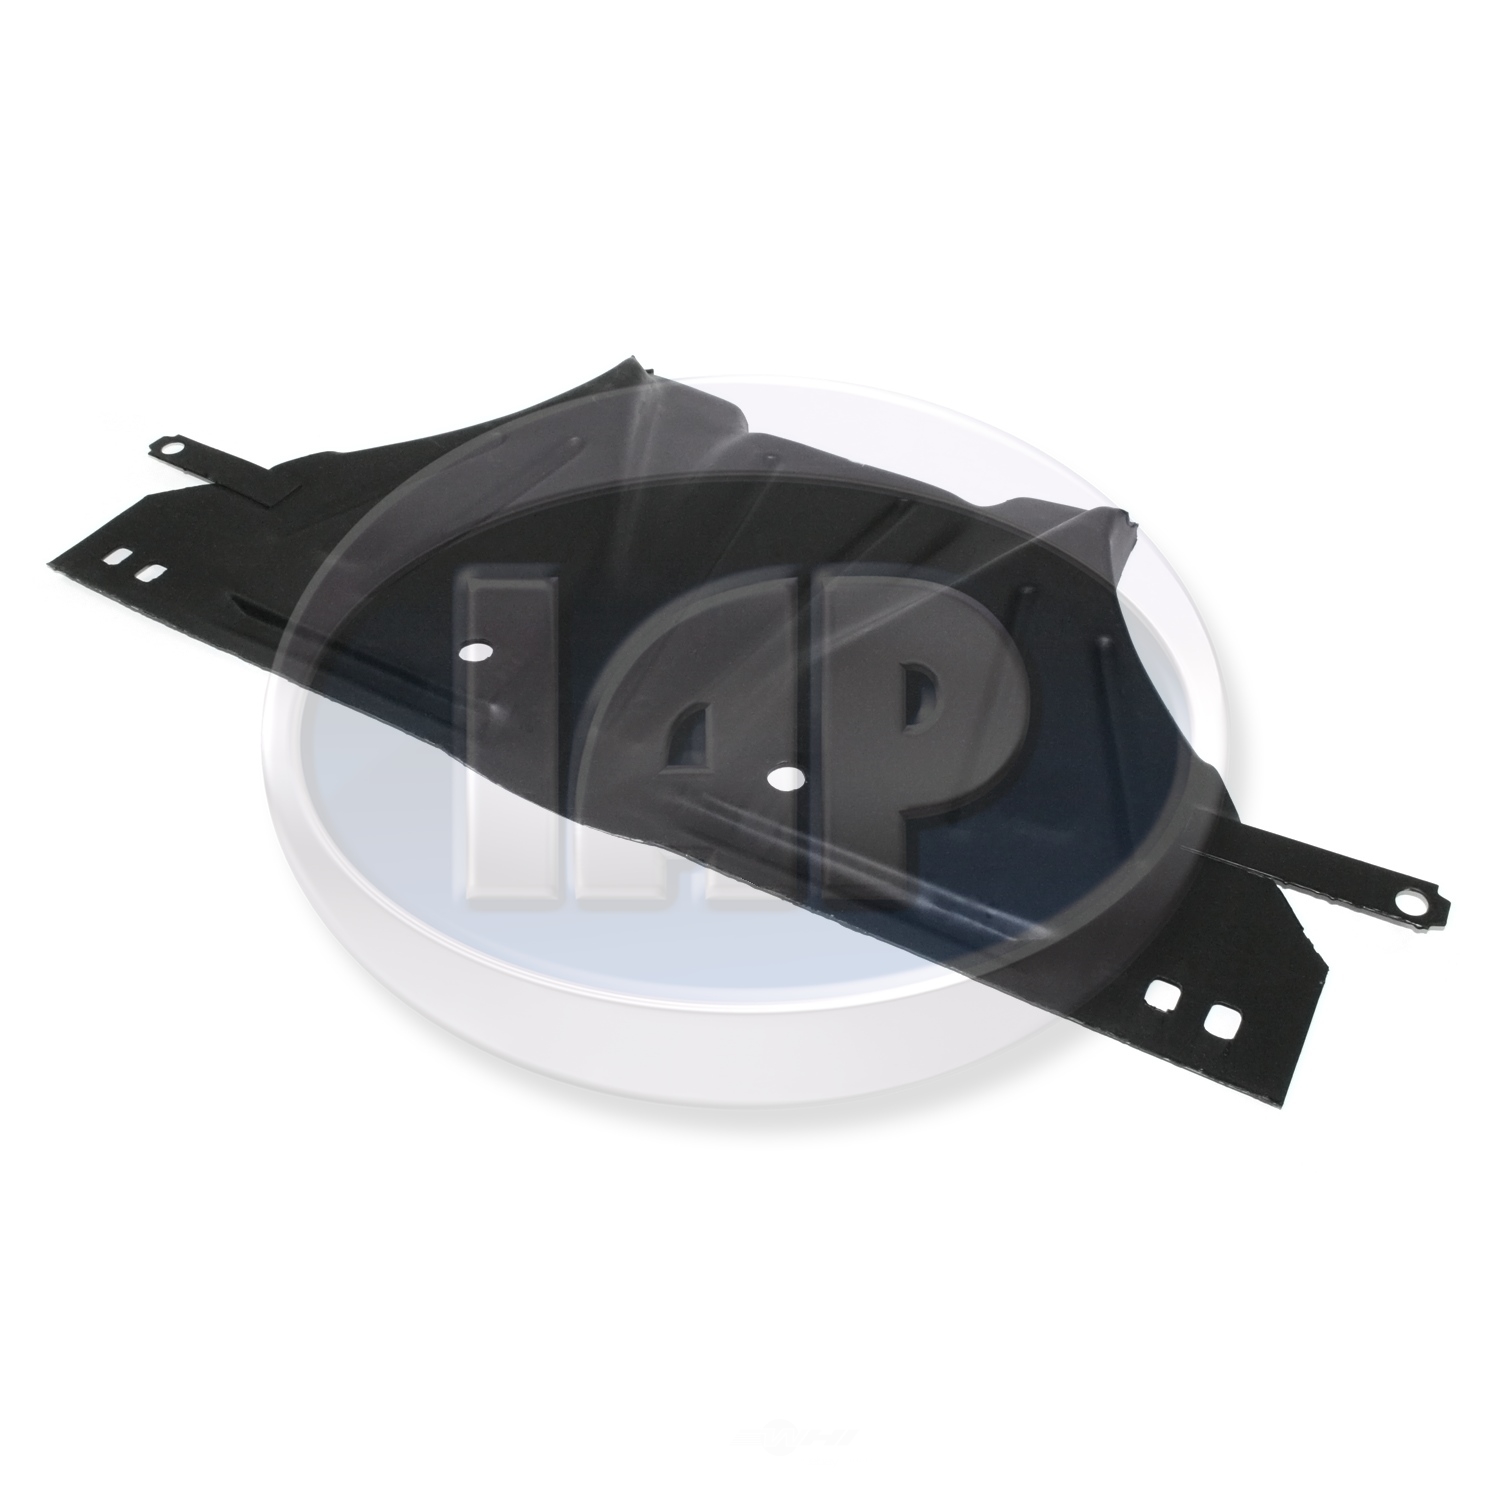 IAP/KUHLTEK MOTORWERKS - Floor Pan Splash Shield - KMS 113701311B